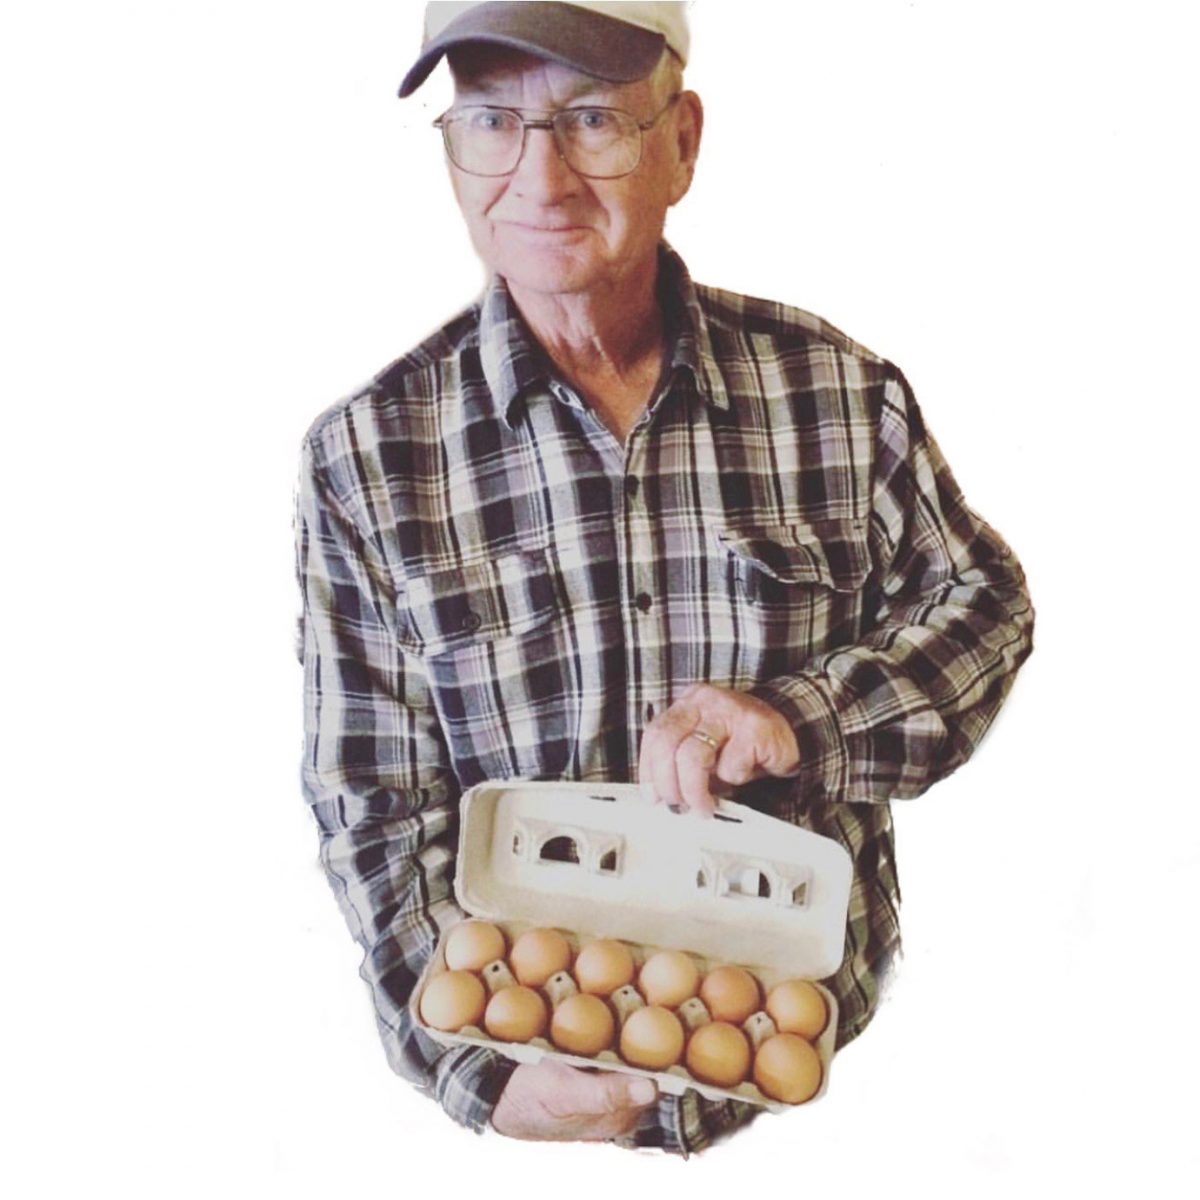 Farmer with eggs